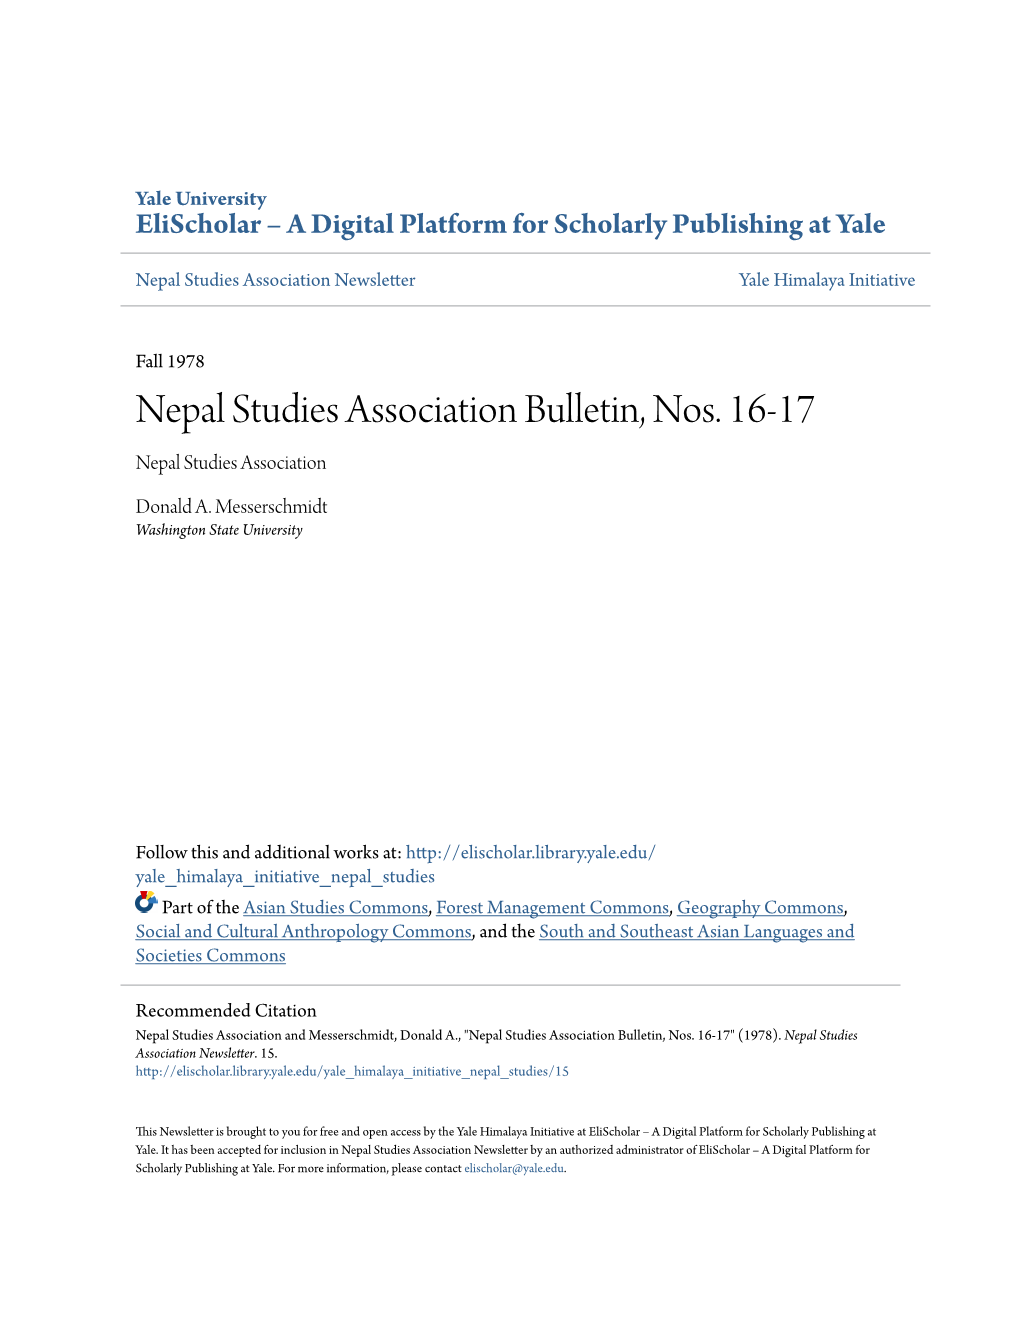 Nepal Studies Association Bulletin, Nos. 16-17 Nepal Studies Association